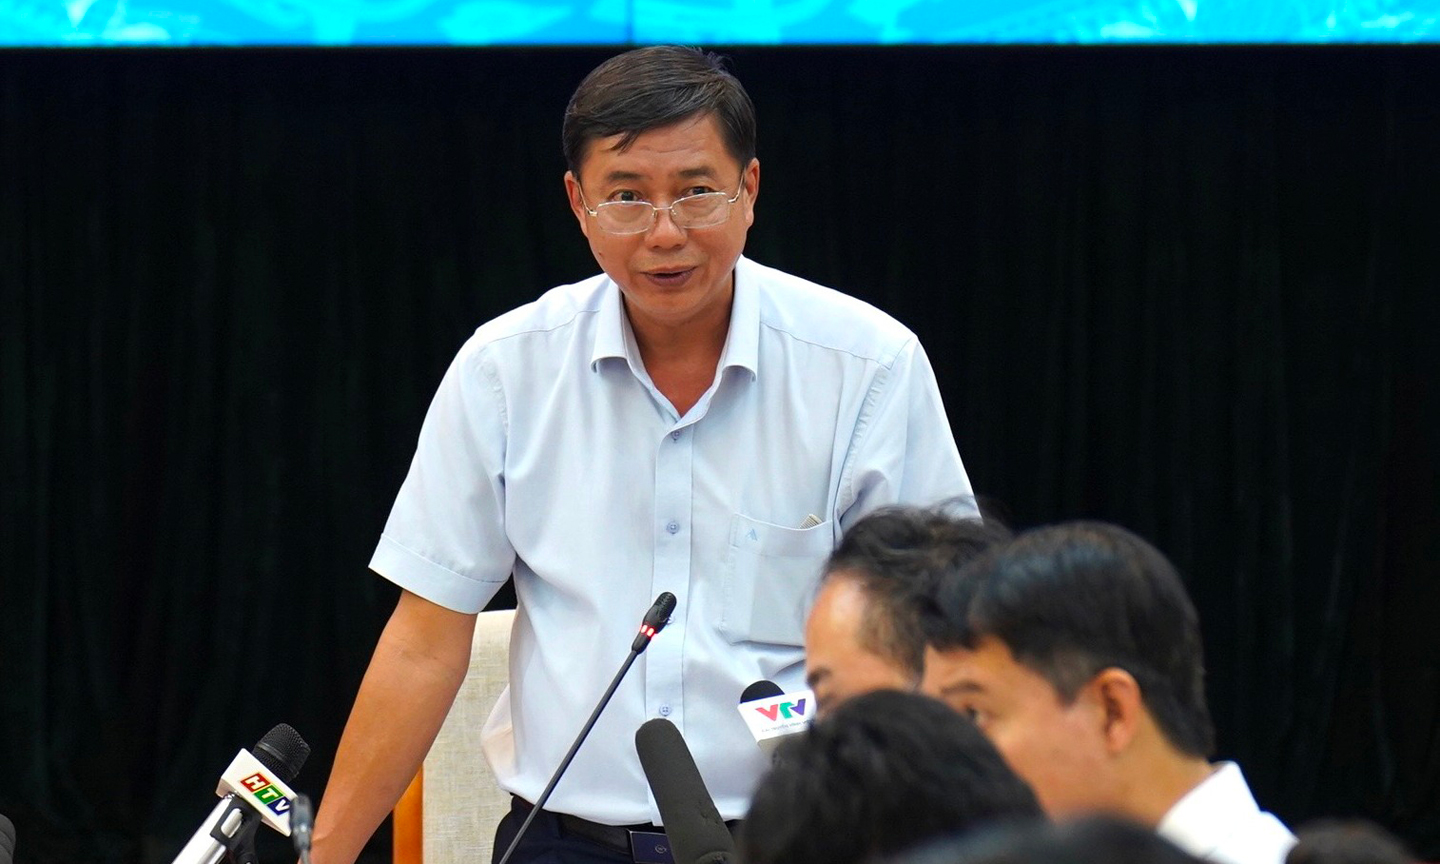 Thiếu tướng Trần Đình Chung, Phó Cục trưởng Cục An ninh chính trị nội bộ (Bộ Công an) trả lời họp báo.